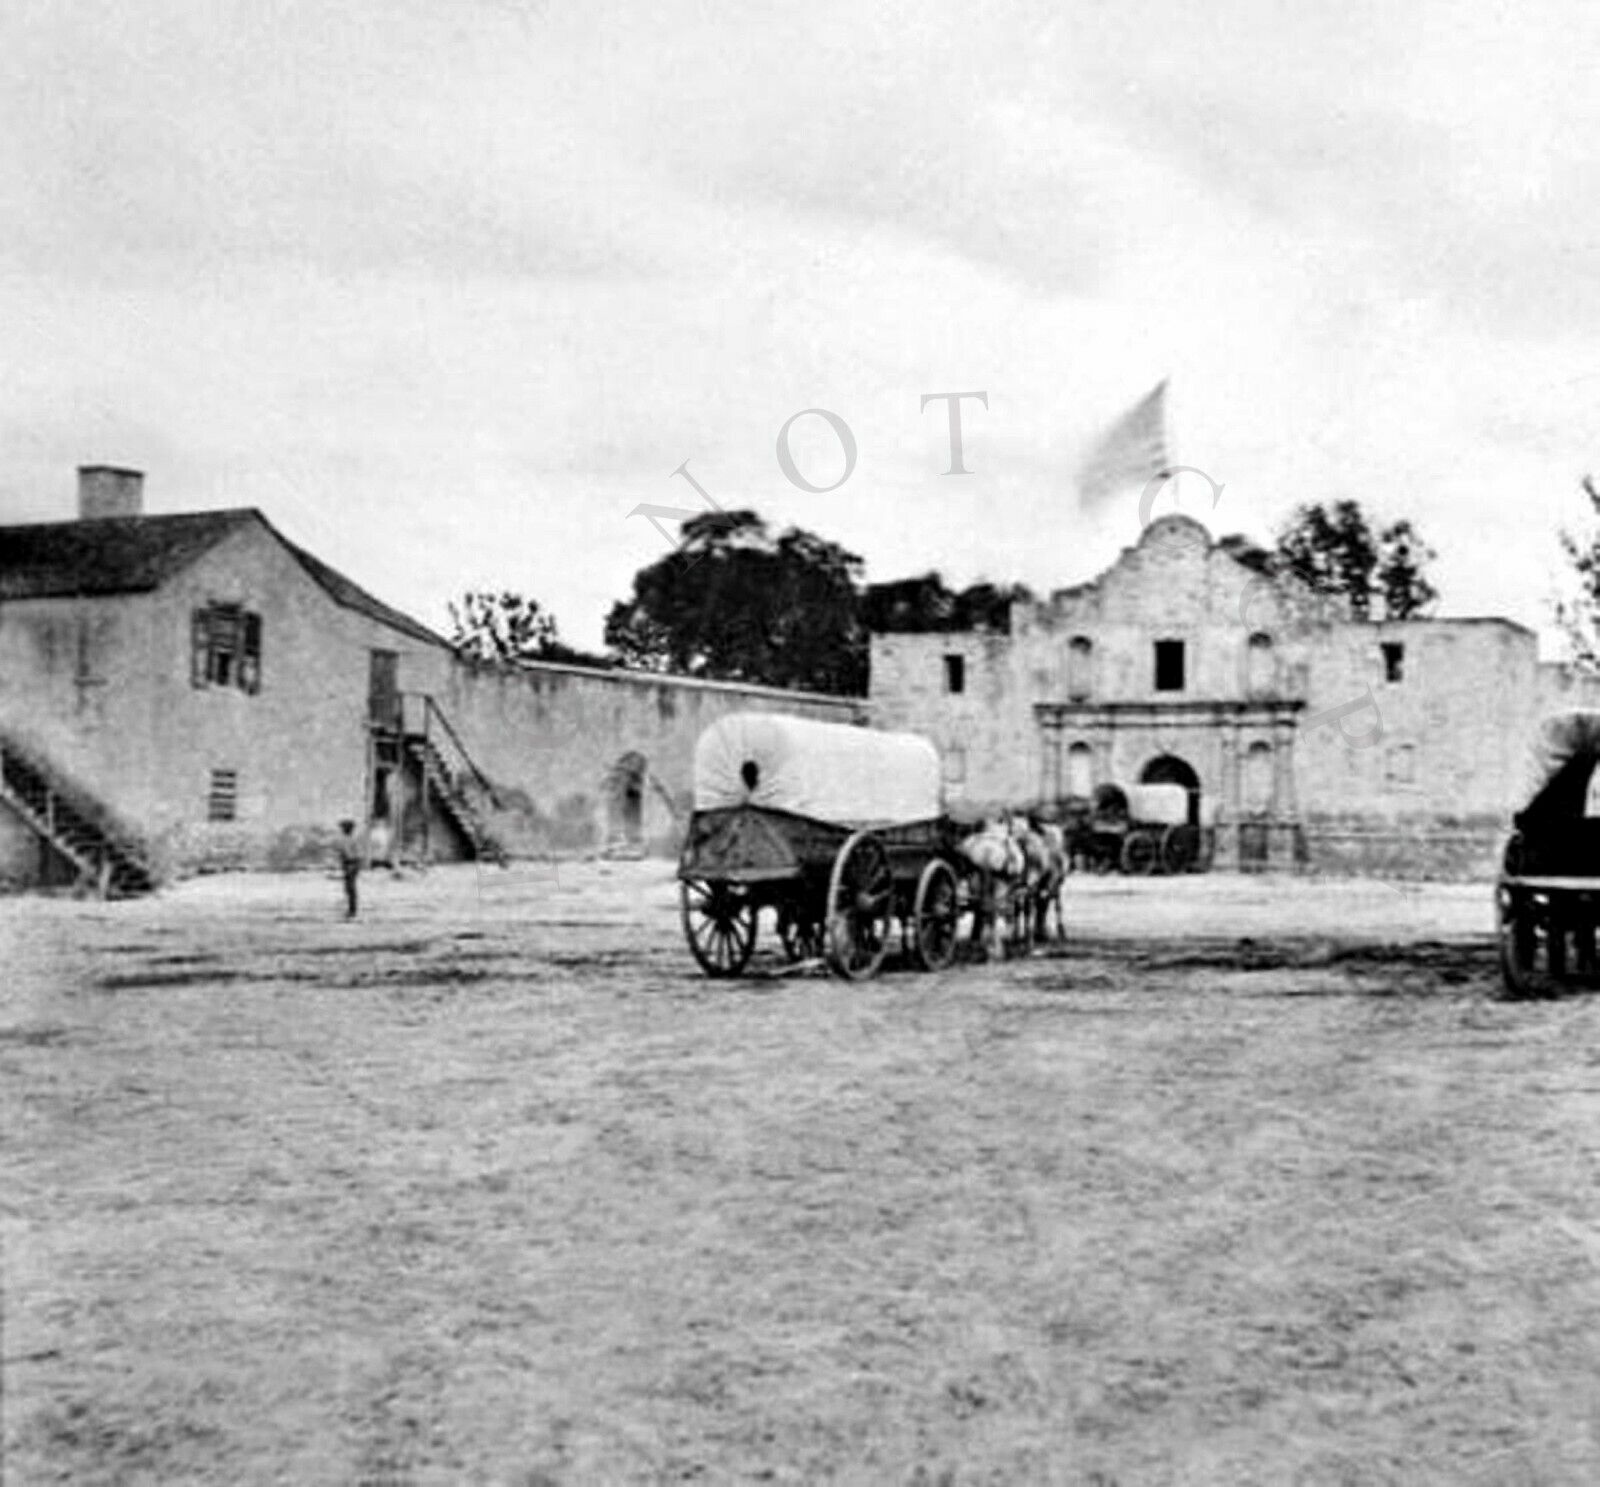 ANTIQUE 8X10 REPRO PHOTOGRAPH PRINT ARMY SUPPLY DEPOT TEXAS ALAMO circa. 1868